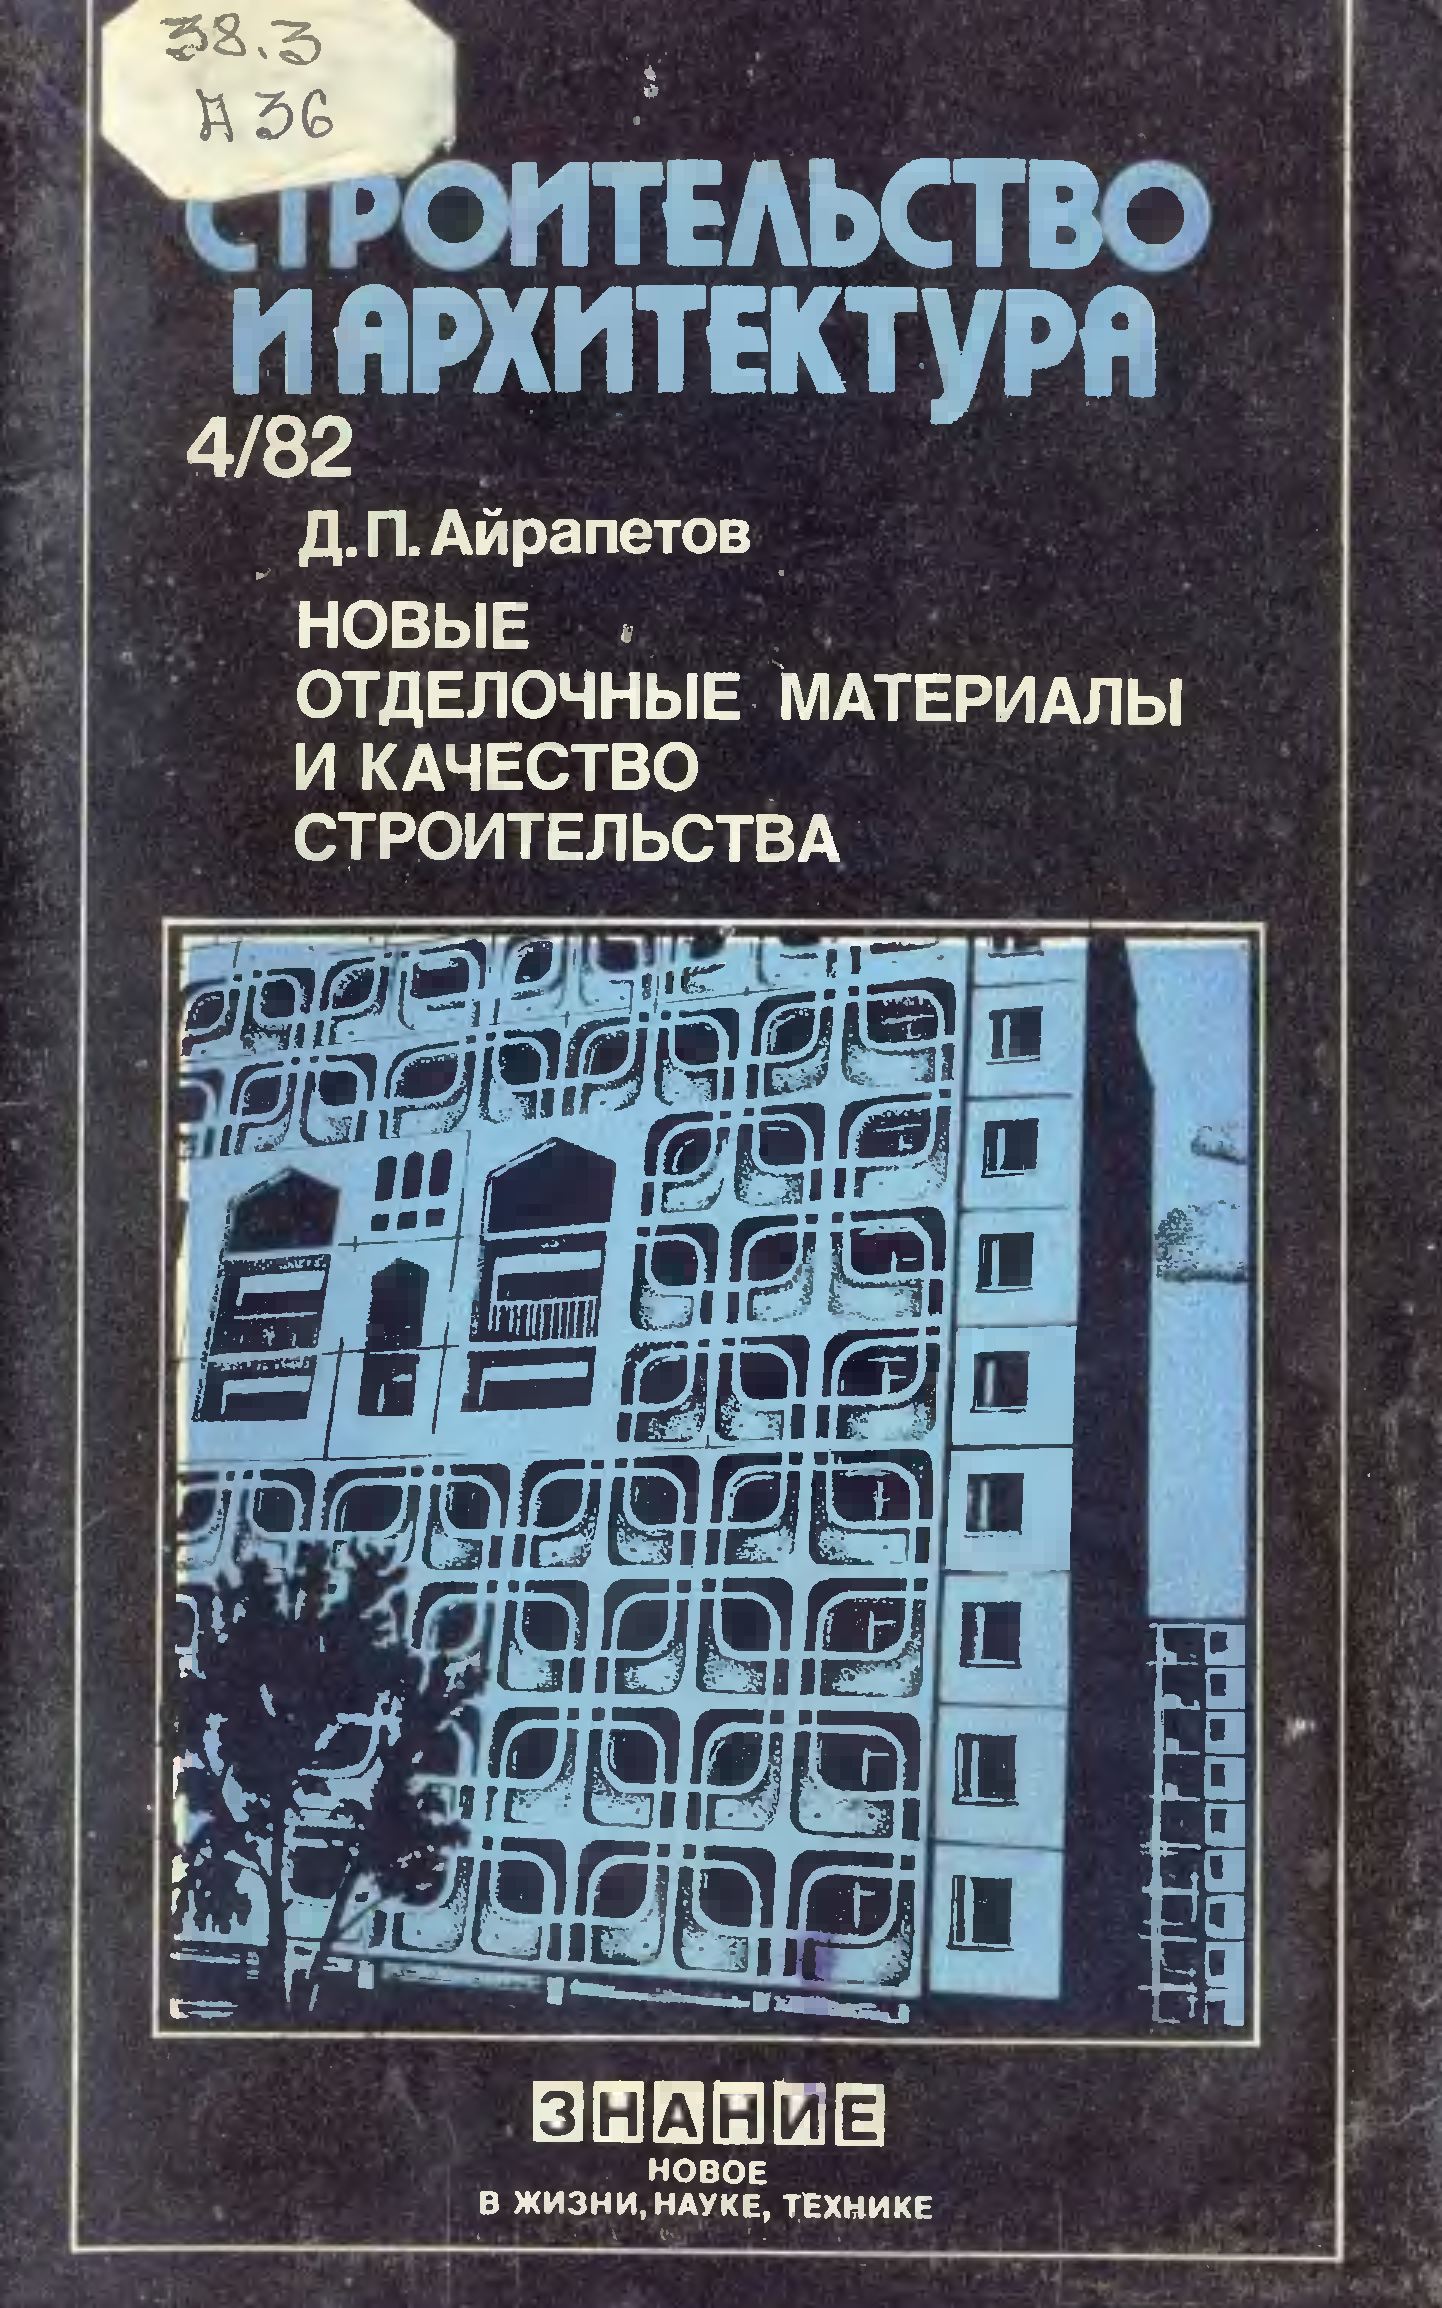 Новые отделочные материалы и качество строительства / Д. П. Айрапетов.  — Москва : Знание, 1982